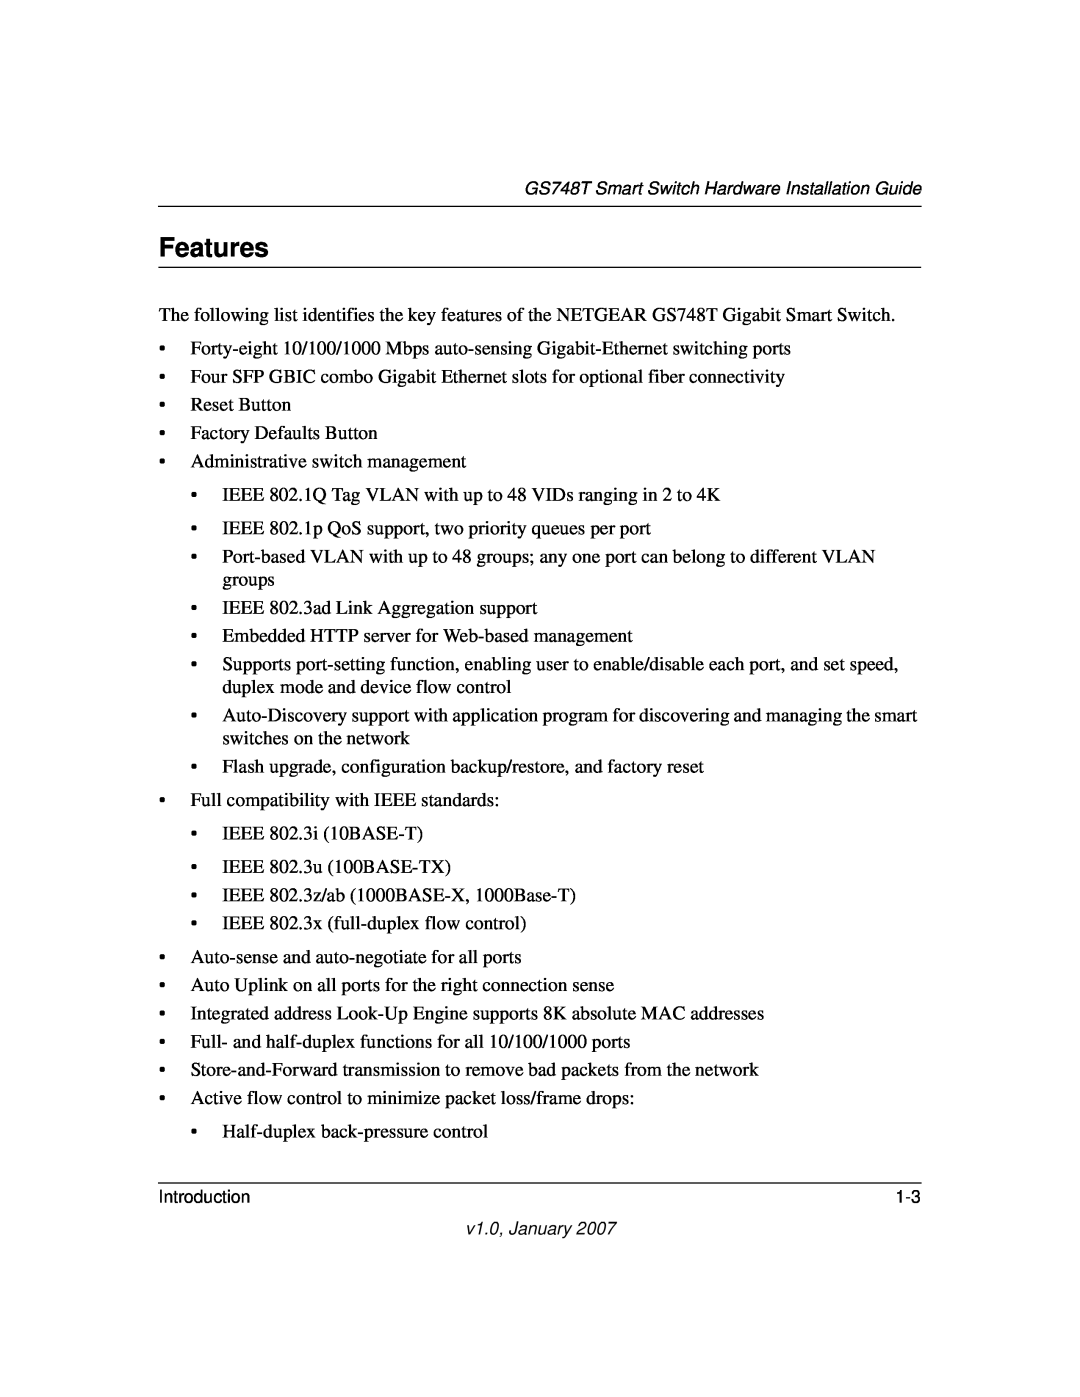 NETGEAR GS748T manual Features 